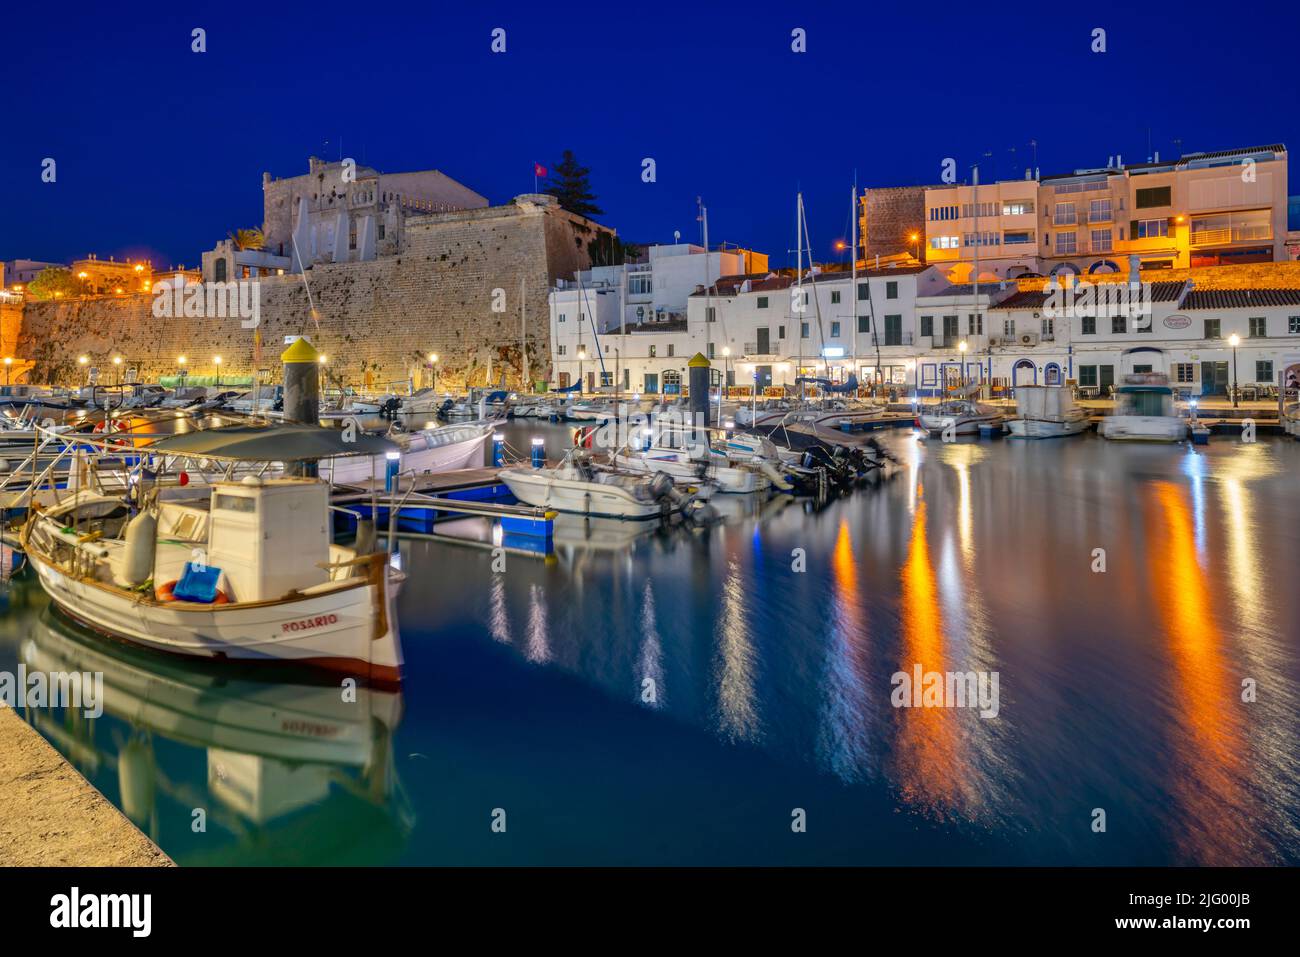 Vista delle barche nel porto turistico sovrastato da edifici imbiancati al tramonto, Ciutadella, Minorca, Isole Baleari, Spagna, Mediterraneo, Europa Foto Stock